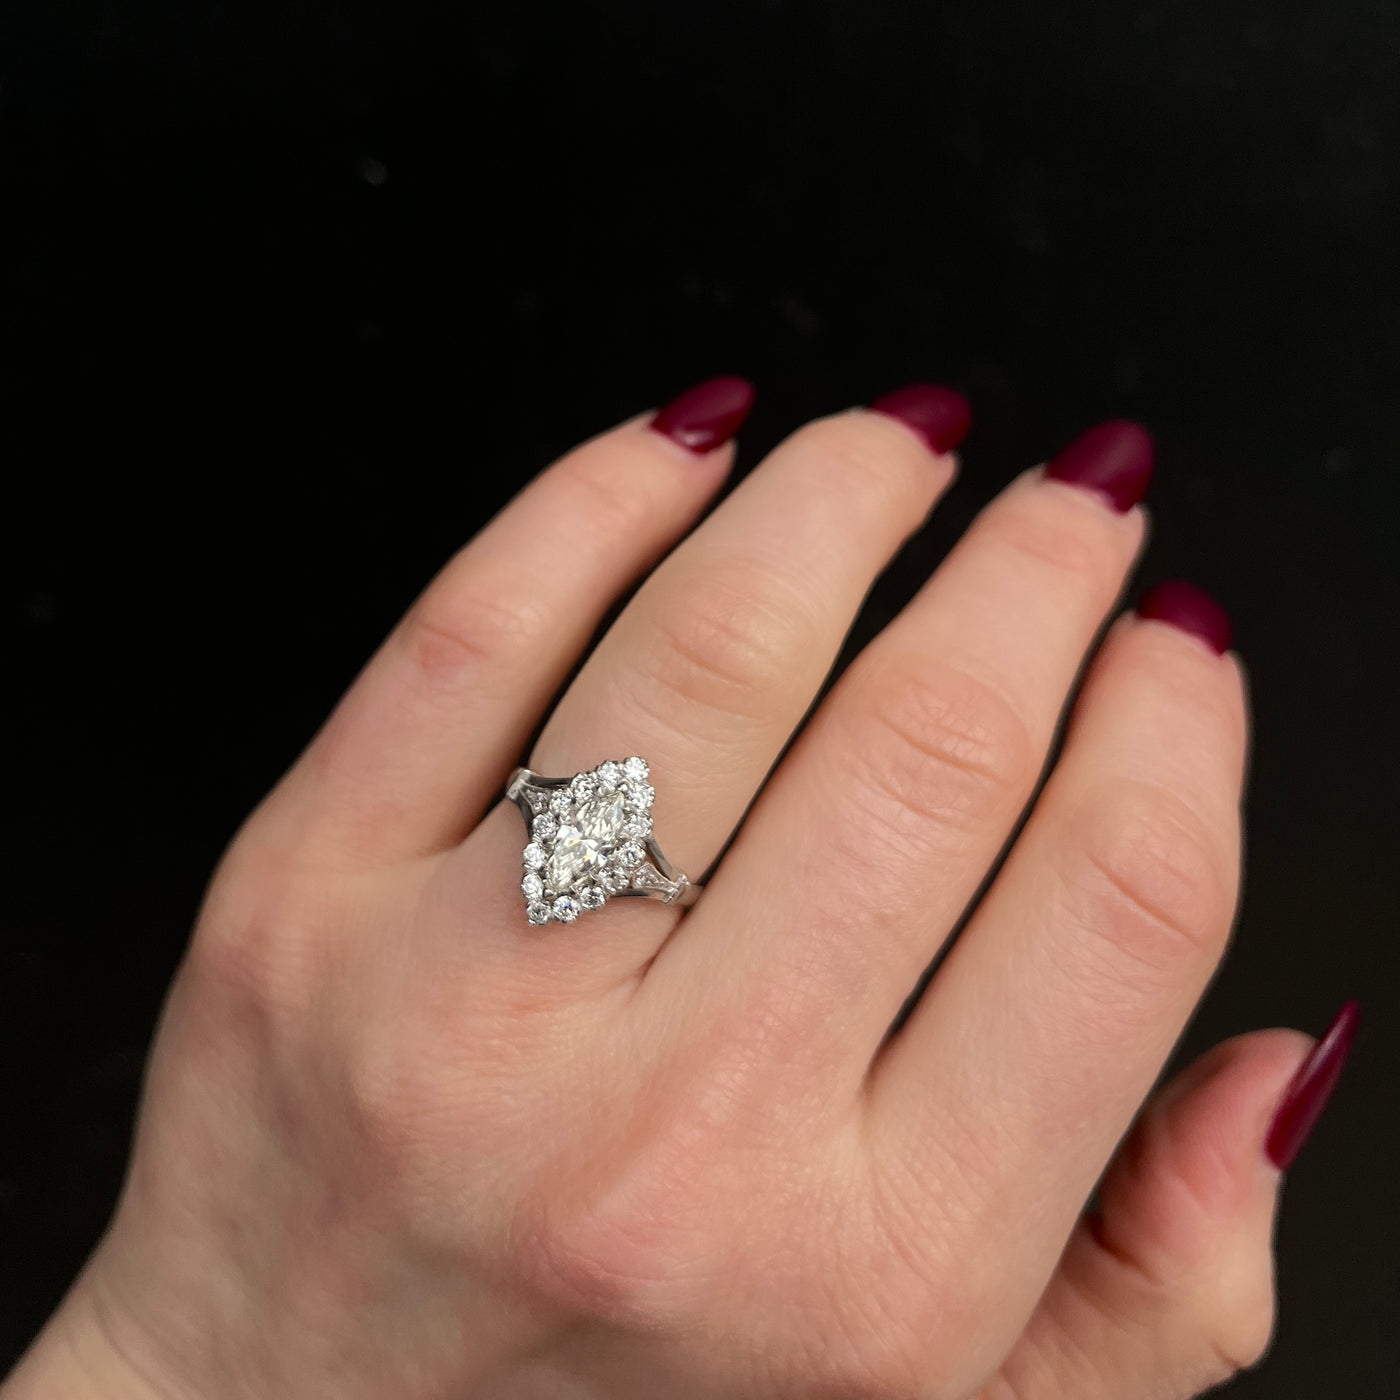 Platinum 0.71 Carat Marquise Cut Diamond Engagement Ring